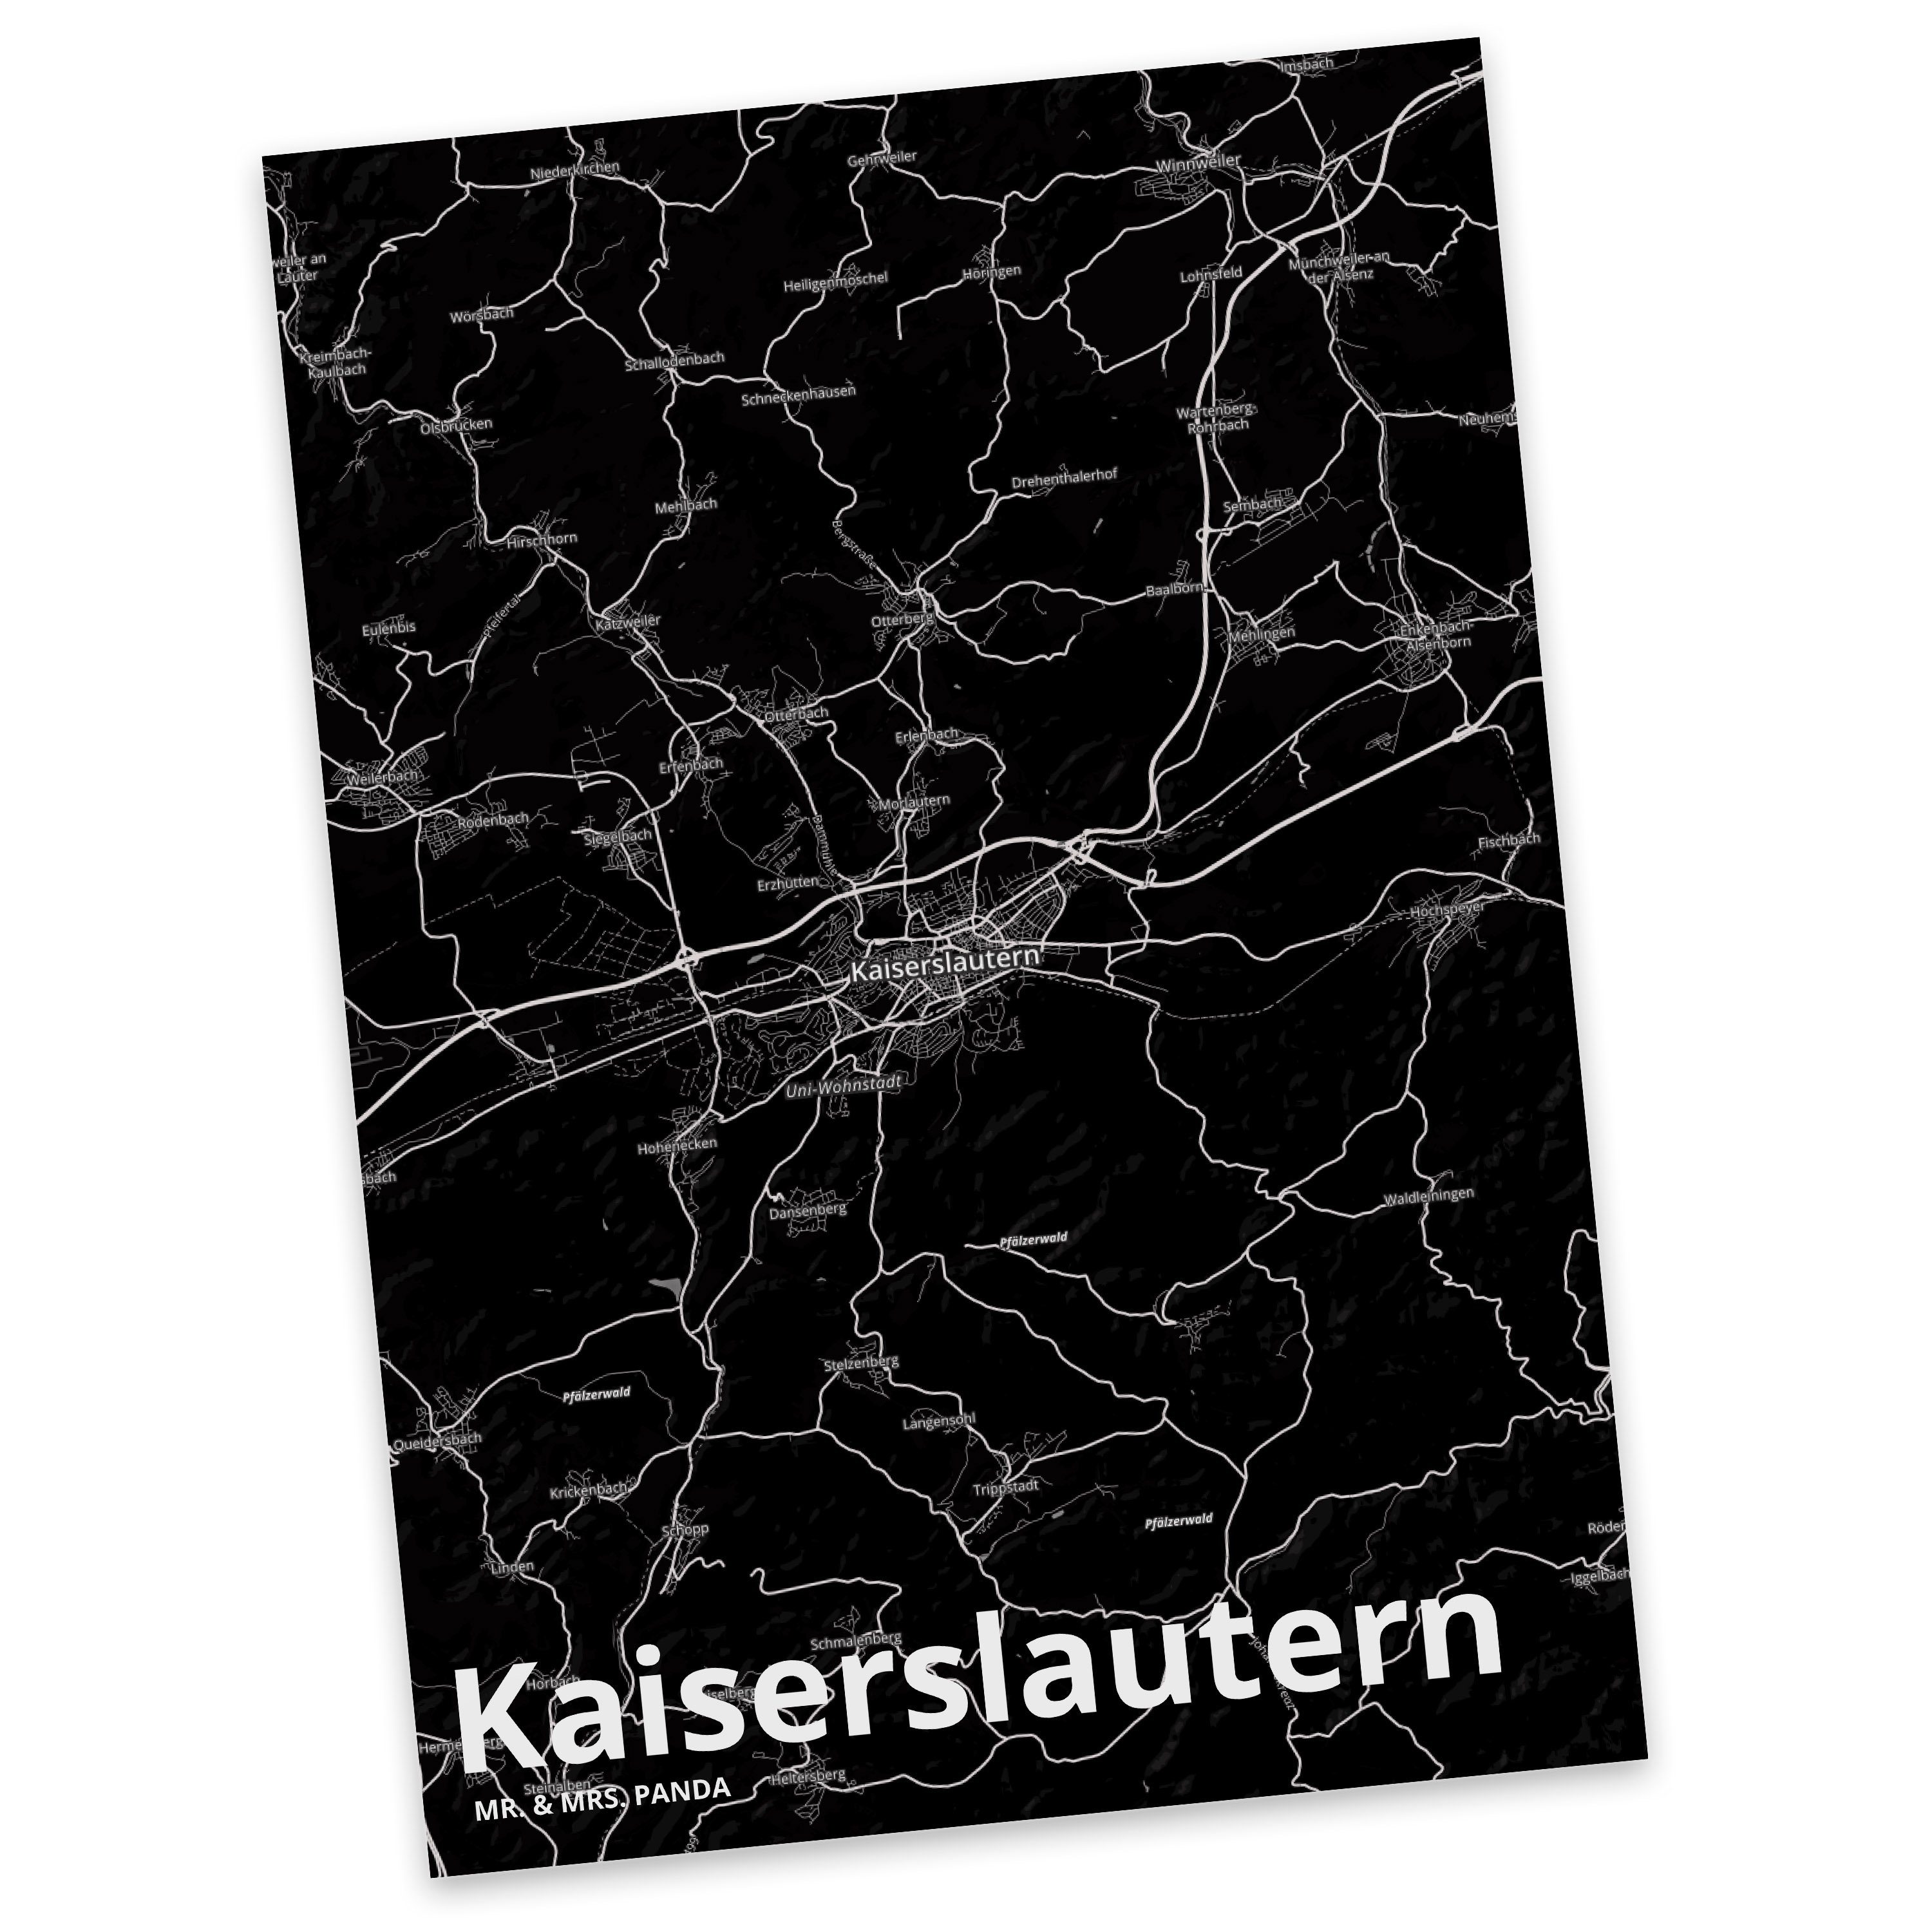 Mr. Einladungskarte, Kaiserslautern Mrs. Panda - & Stä Geschenk, Grußkarte, Einladung, Postkarte